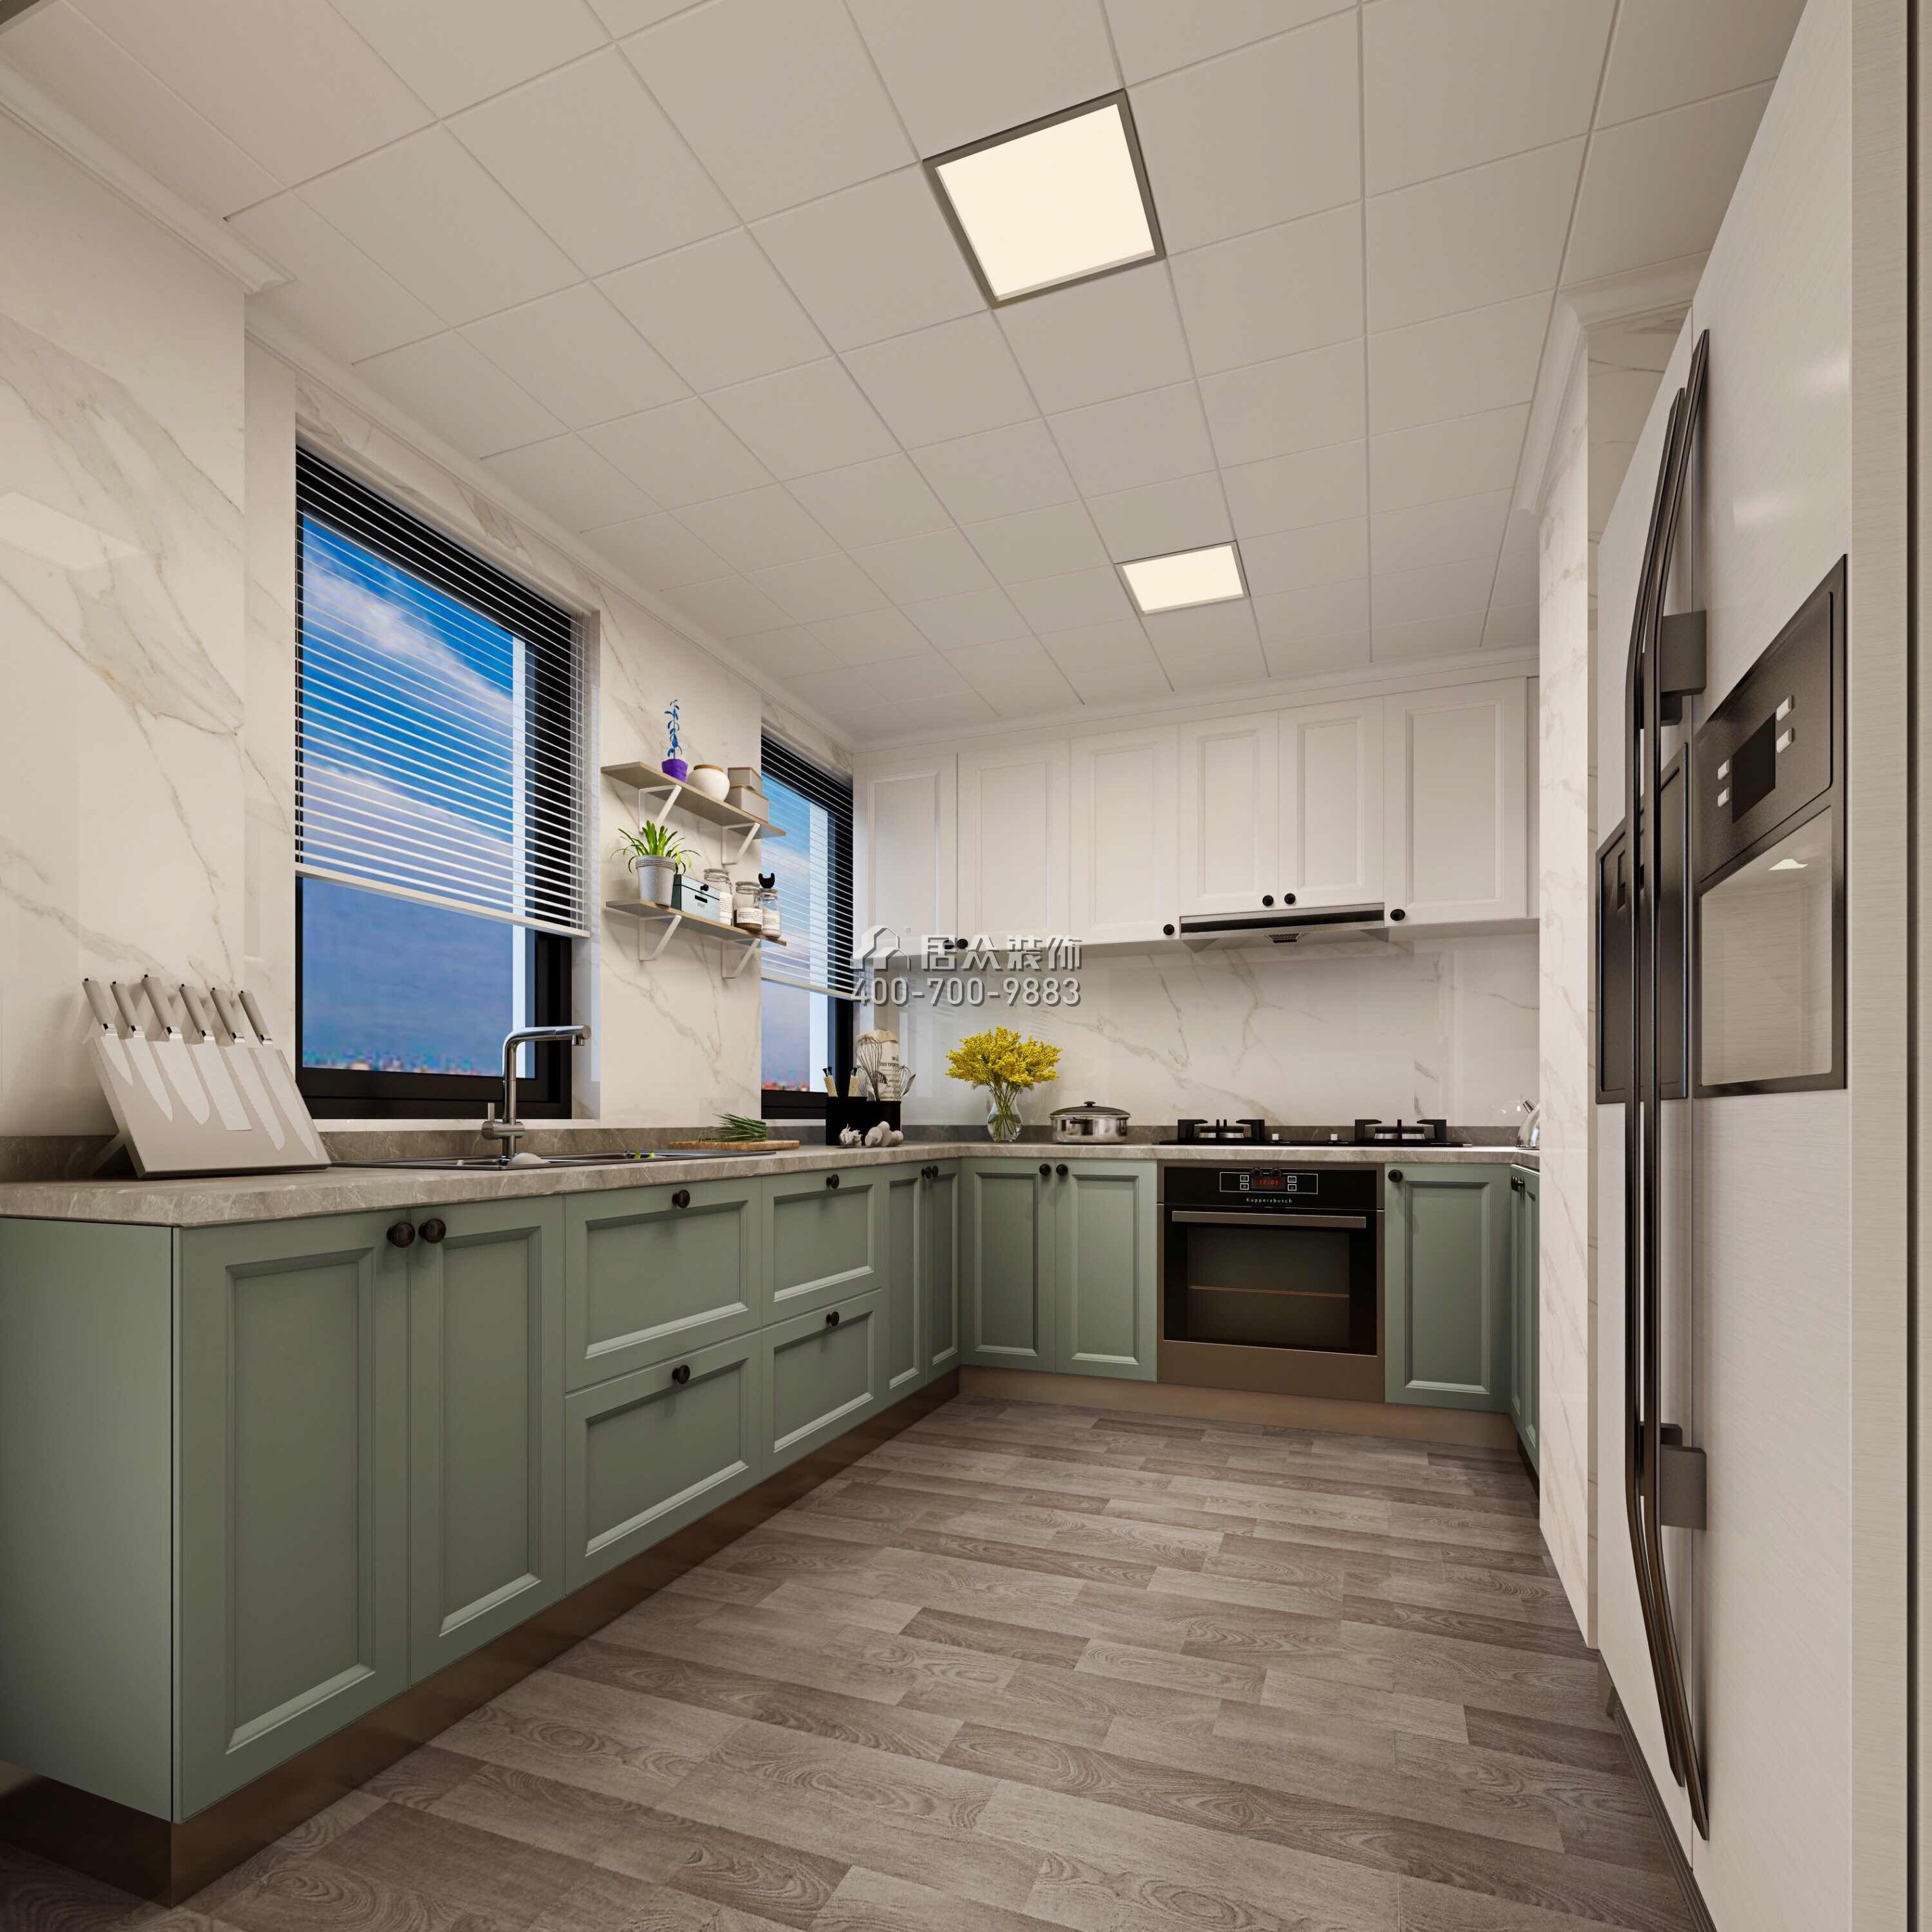 星河传说聚星岛110平方米美式风格平层户型厨房装修效果图